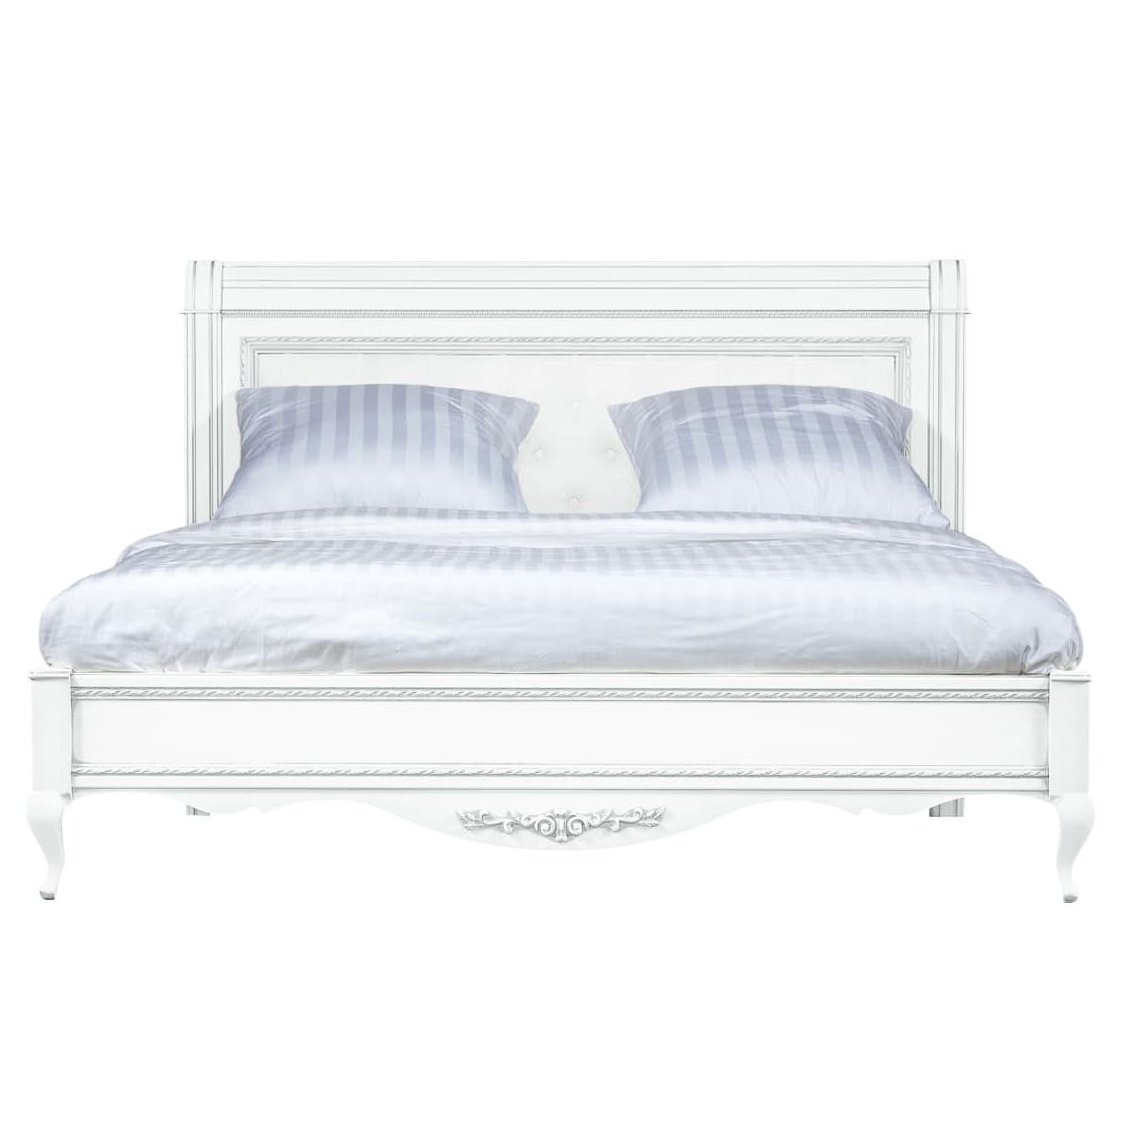 Кровать Timber Неаполь, двуспальная с мягким изголовьем 180x200 см цвет: белый с серебром (T-528)T-528